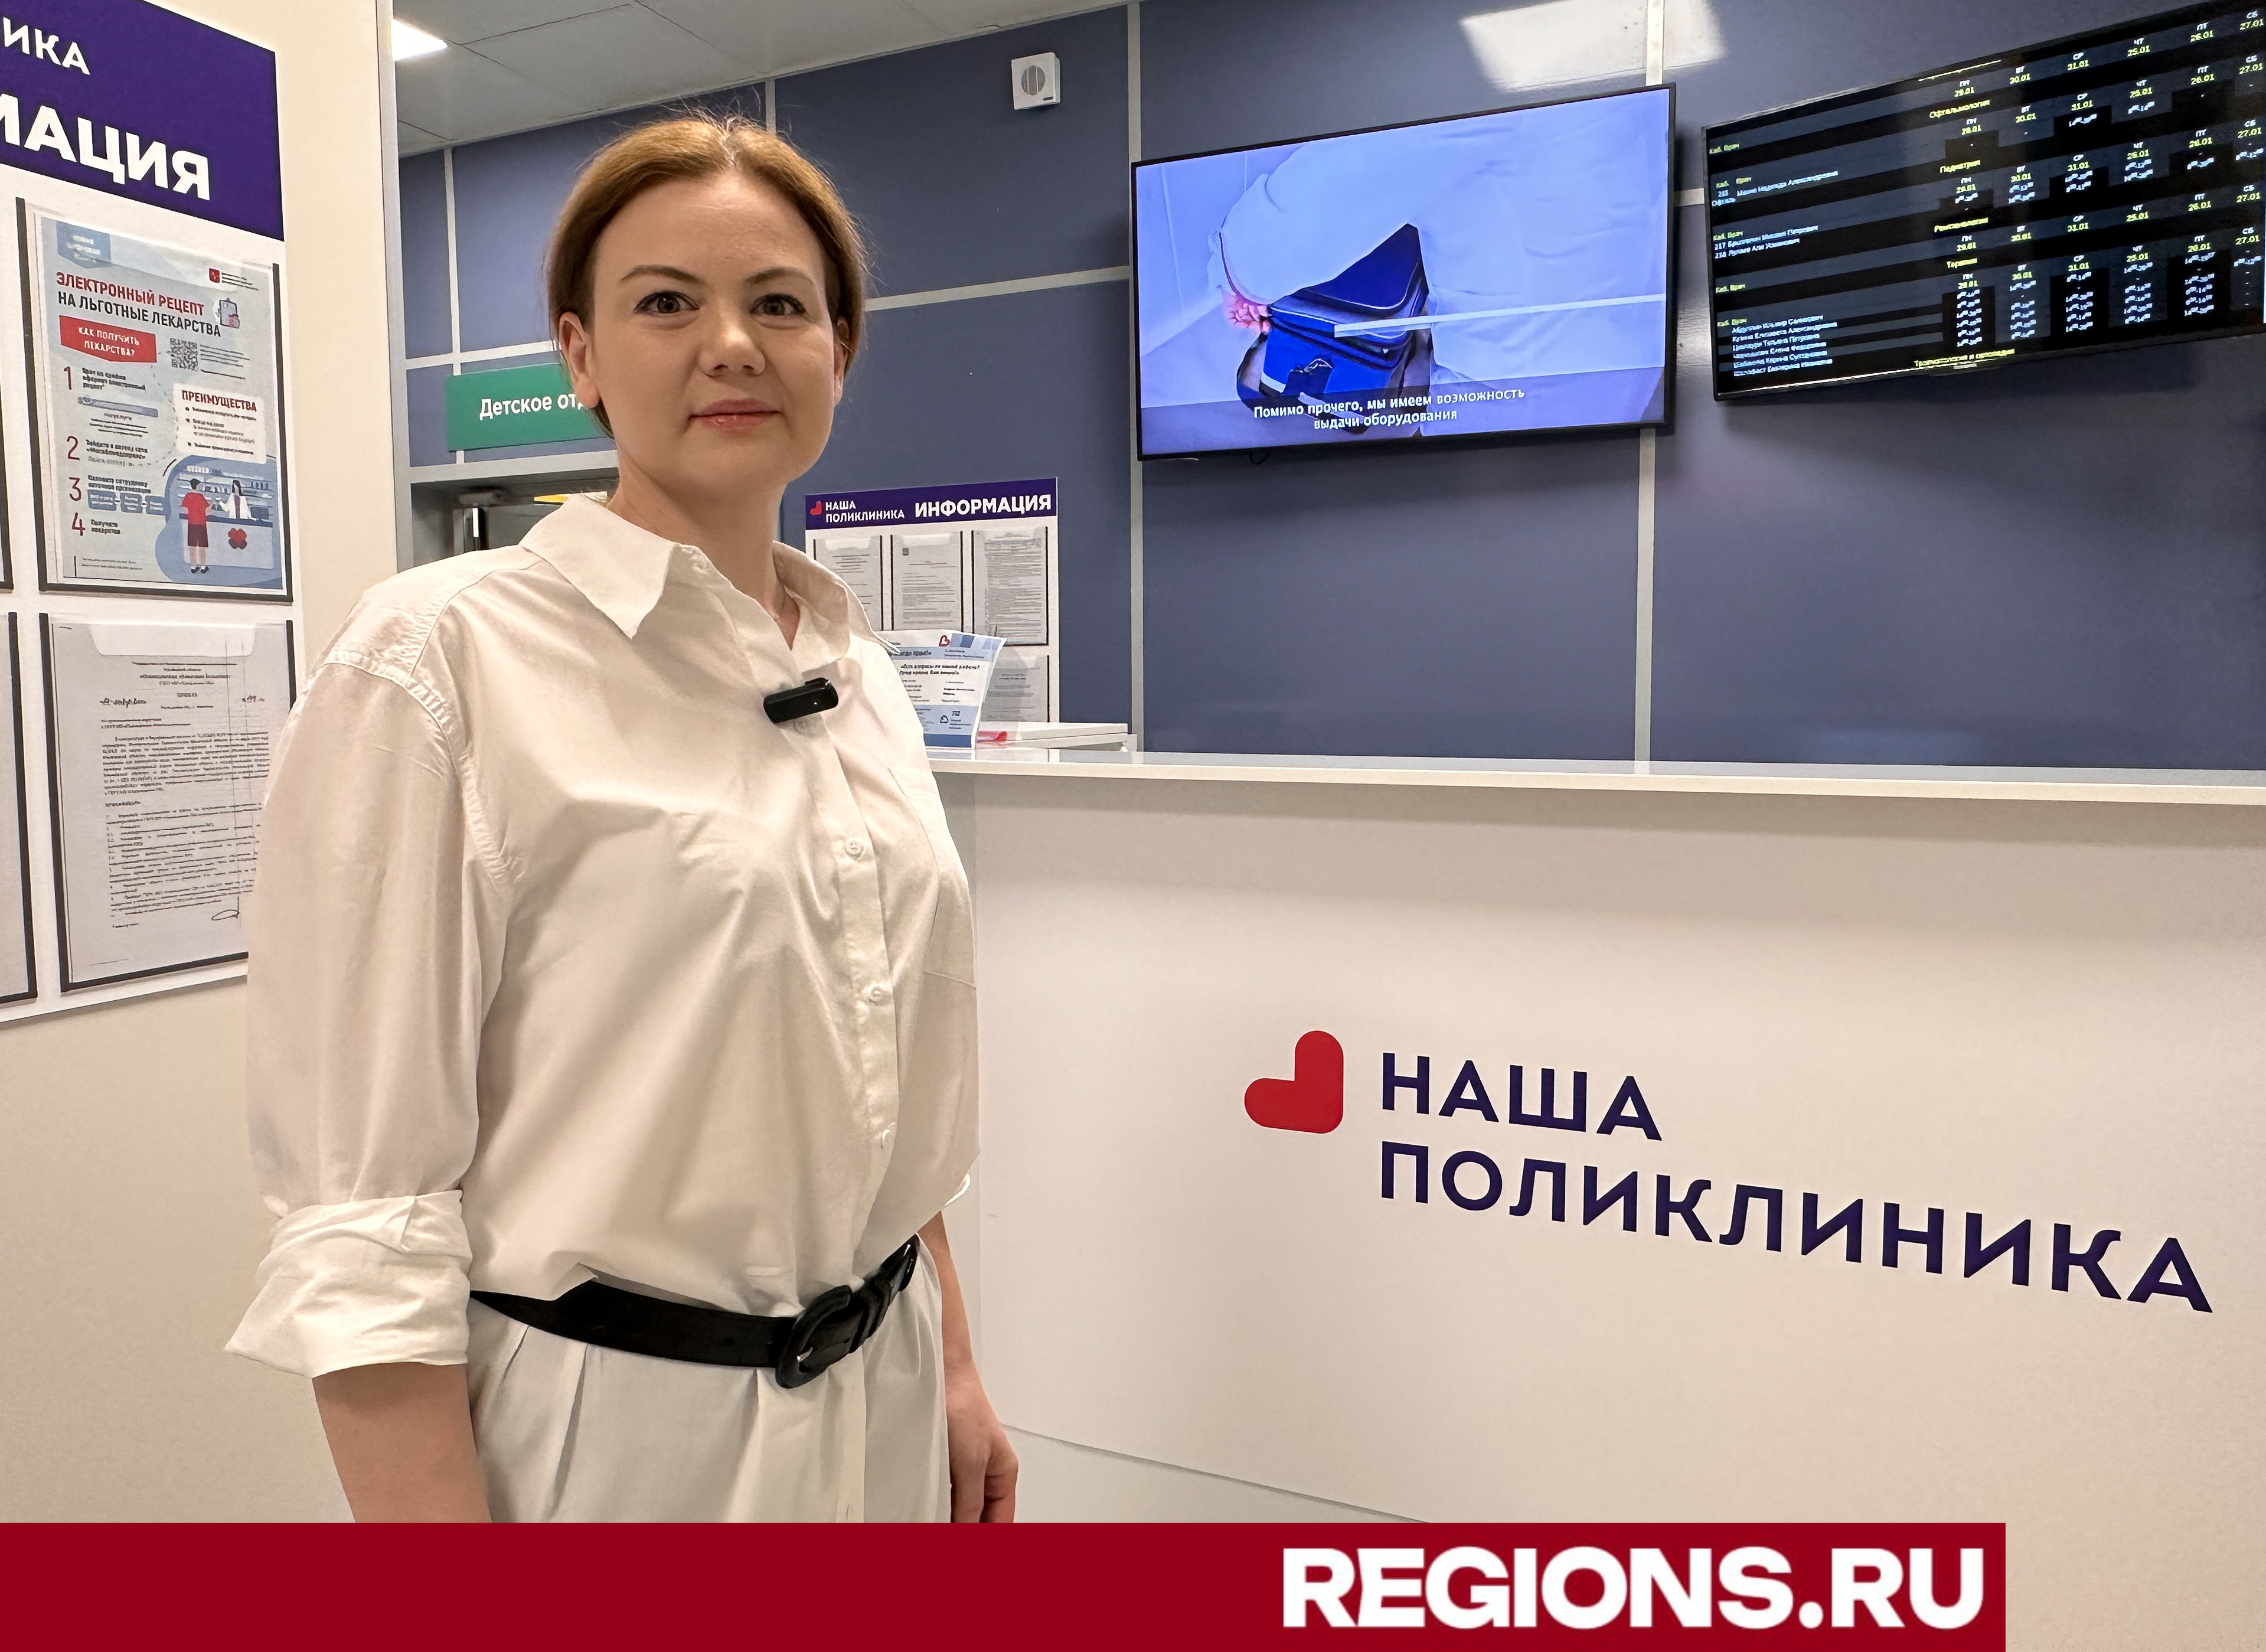 Поликлиника нового стандарта: служба клиентского сервиса работает в Ромашково